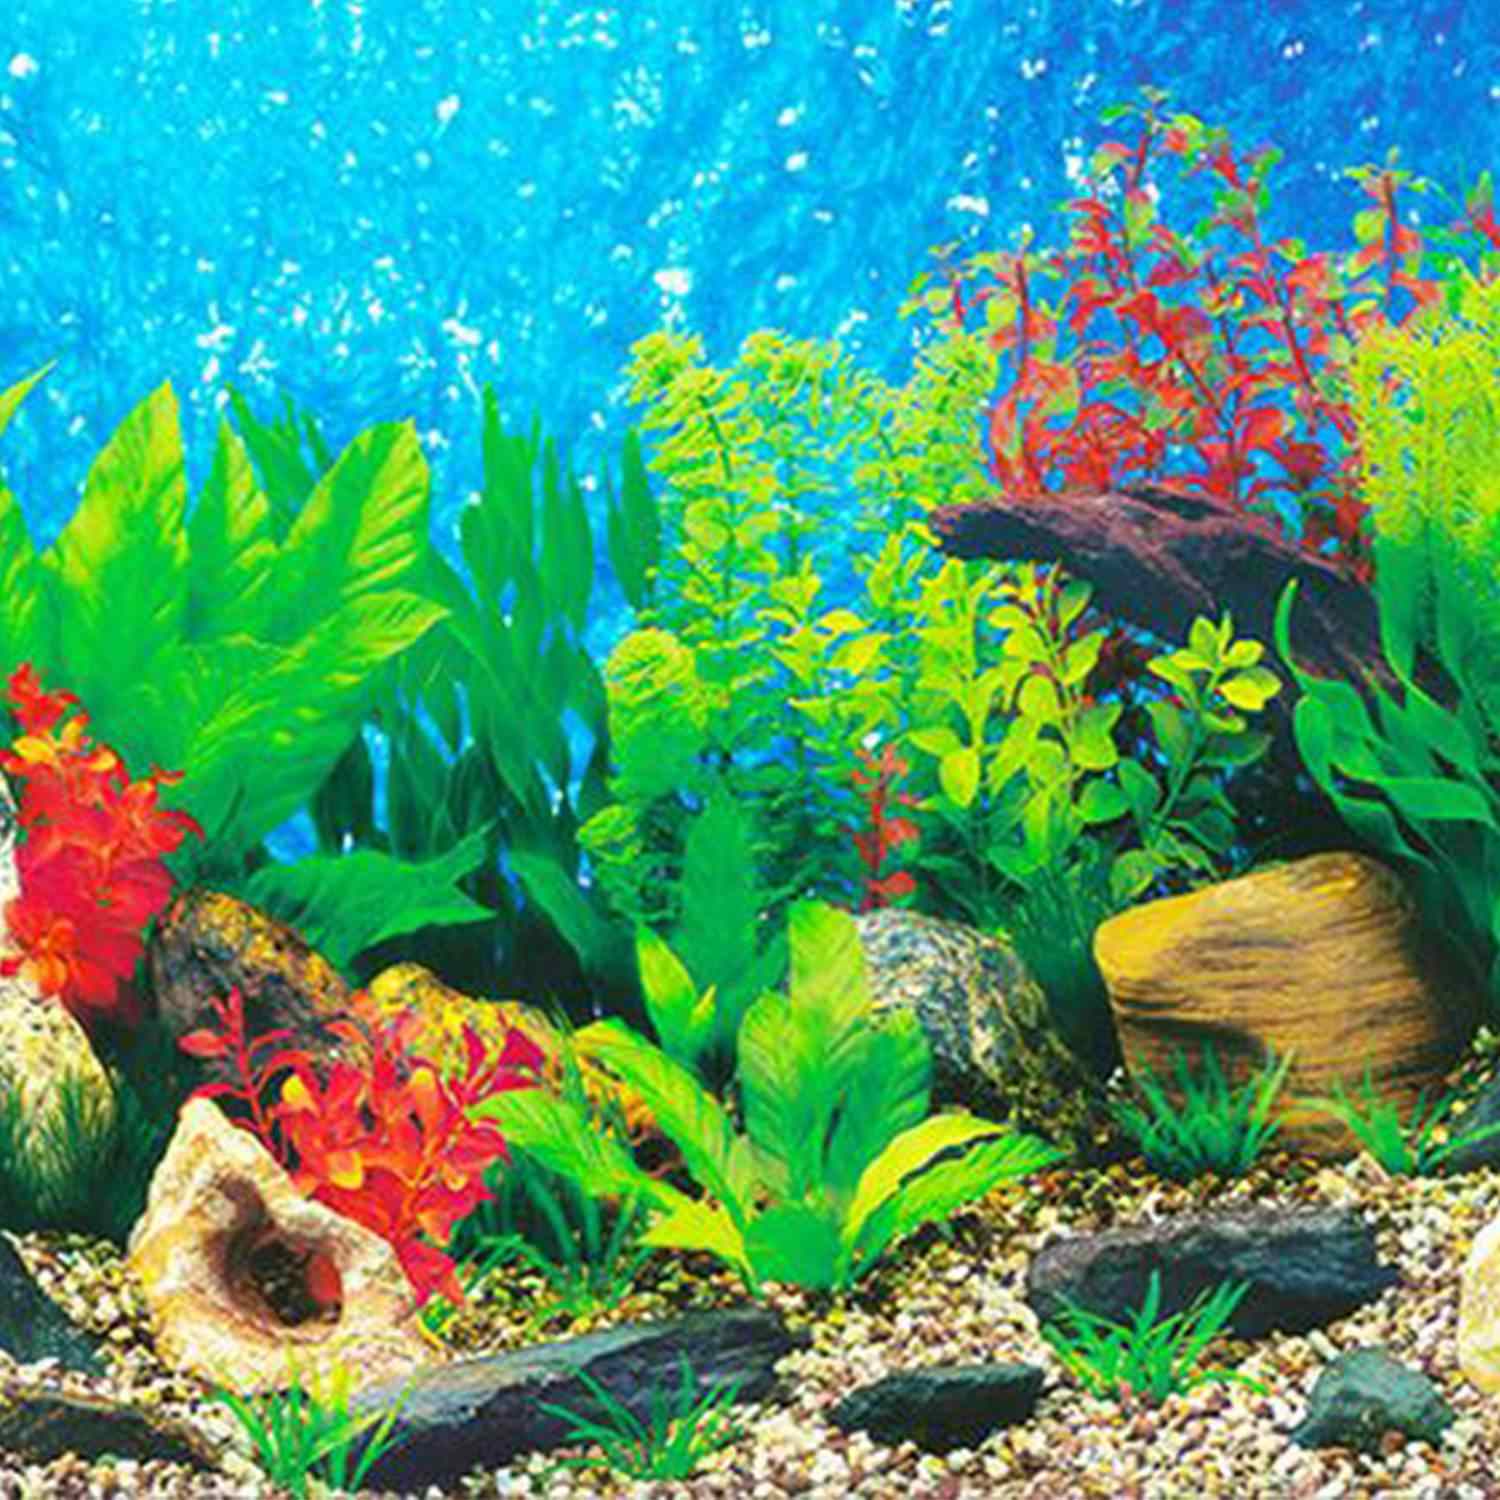 fish tank wallpaper hd,aquarium decor,freshwater aquarium,underwater,aquarium,marine biology